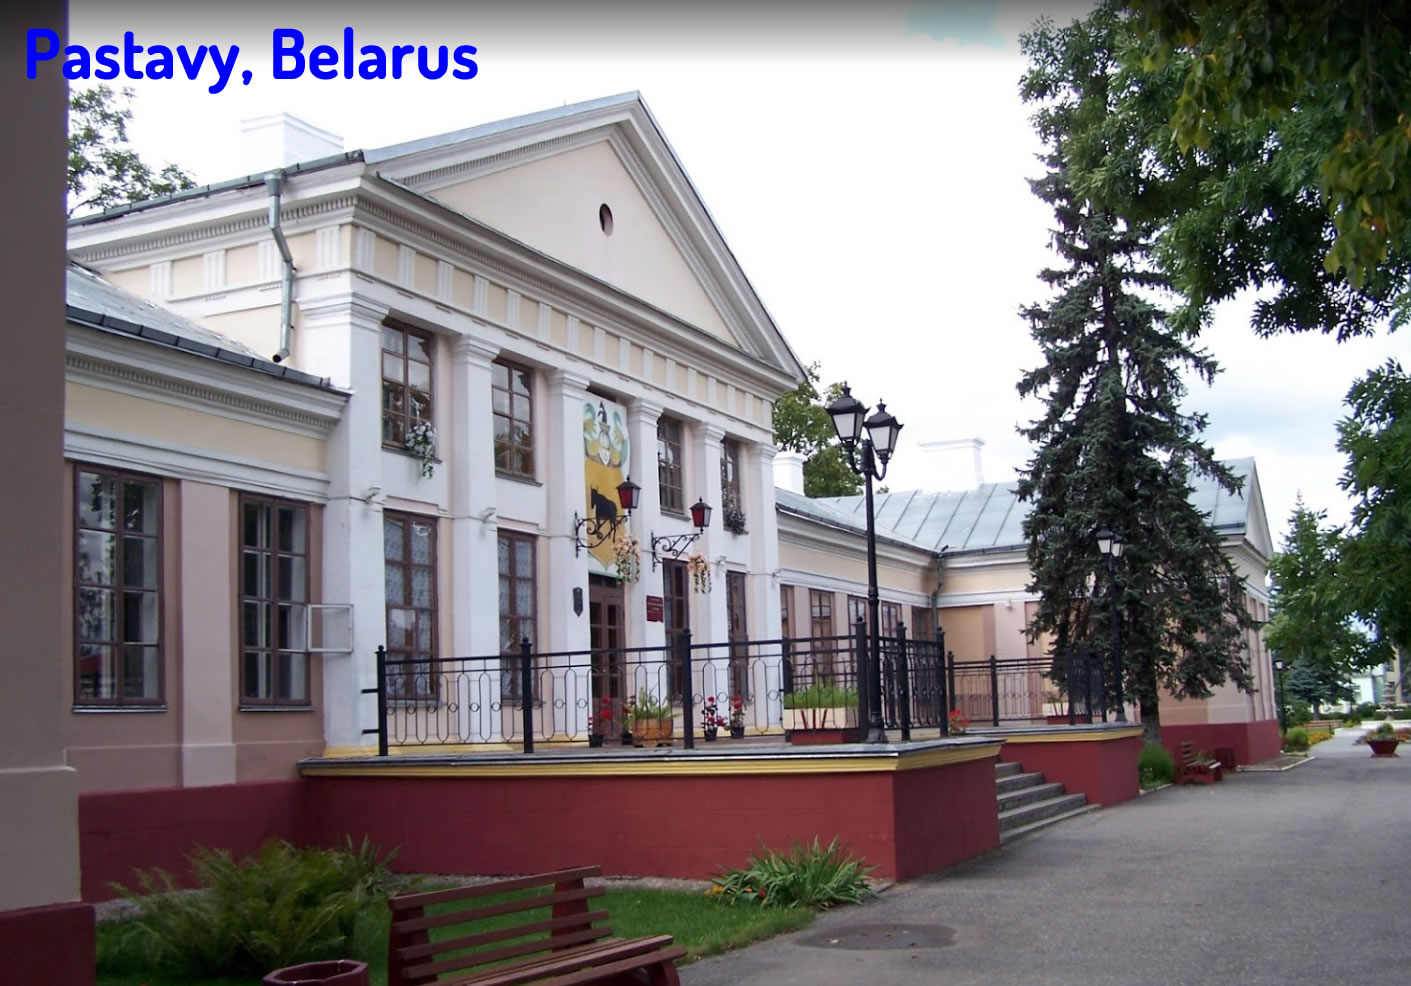 Pastavy Belarus